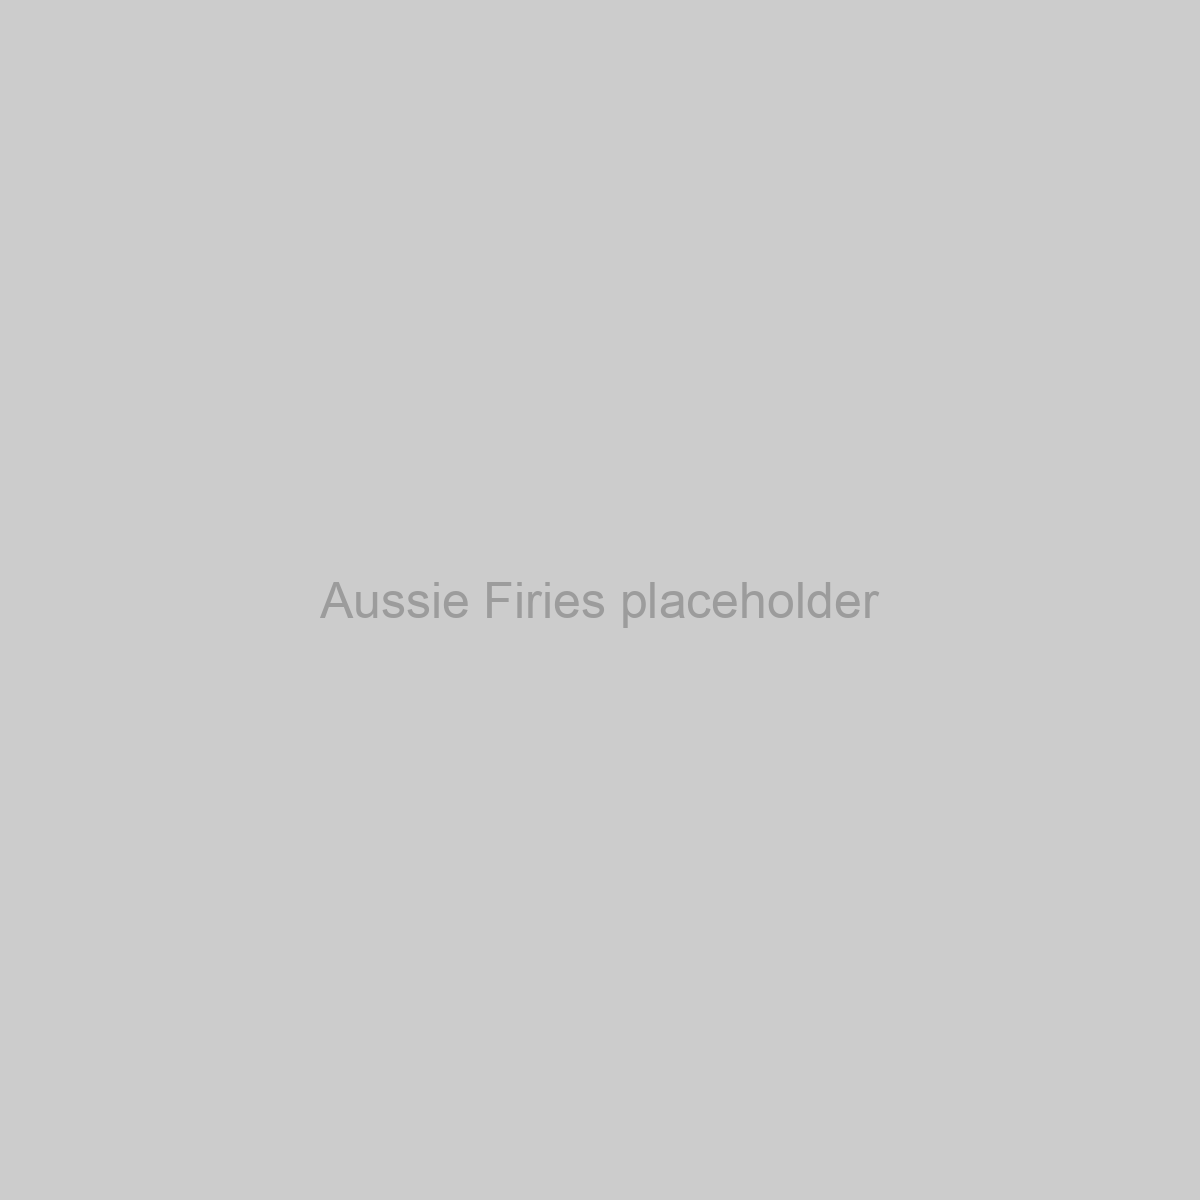 Aussie Firies Placeholder Image